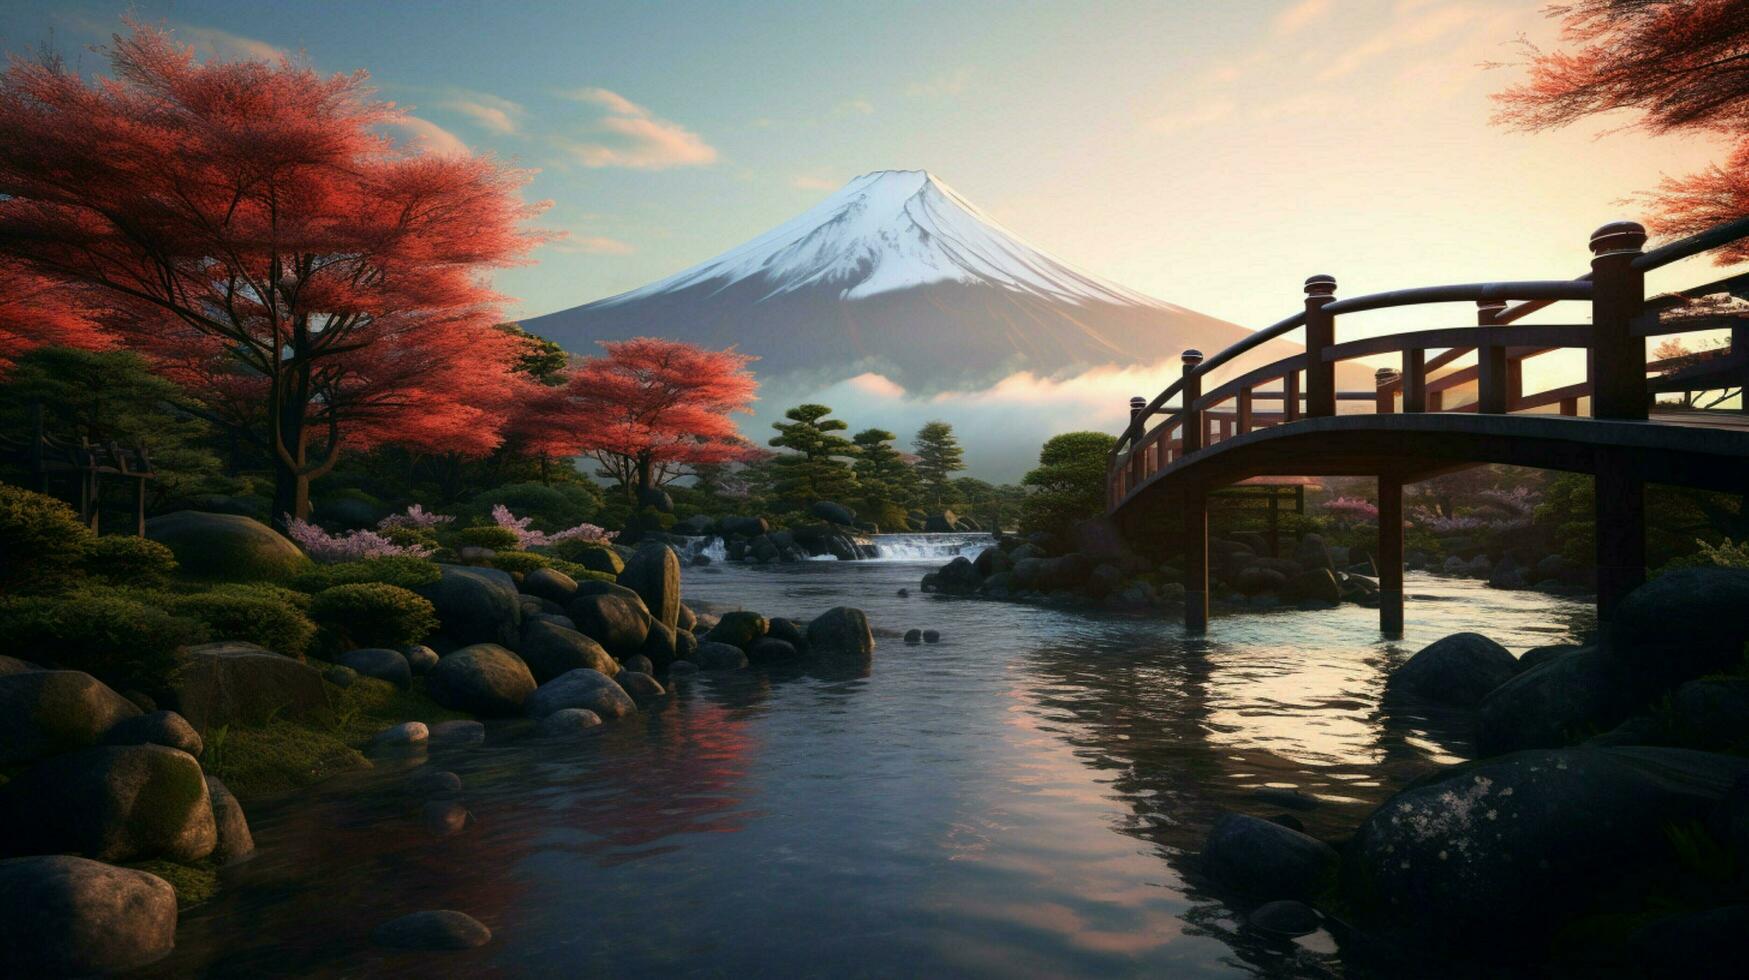 papeis de parede do montar Fuji dentro a estilo do corajoso foto